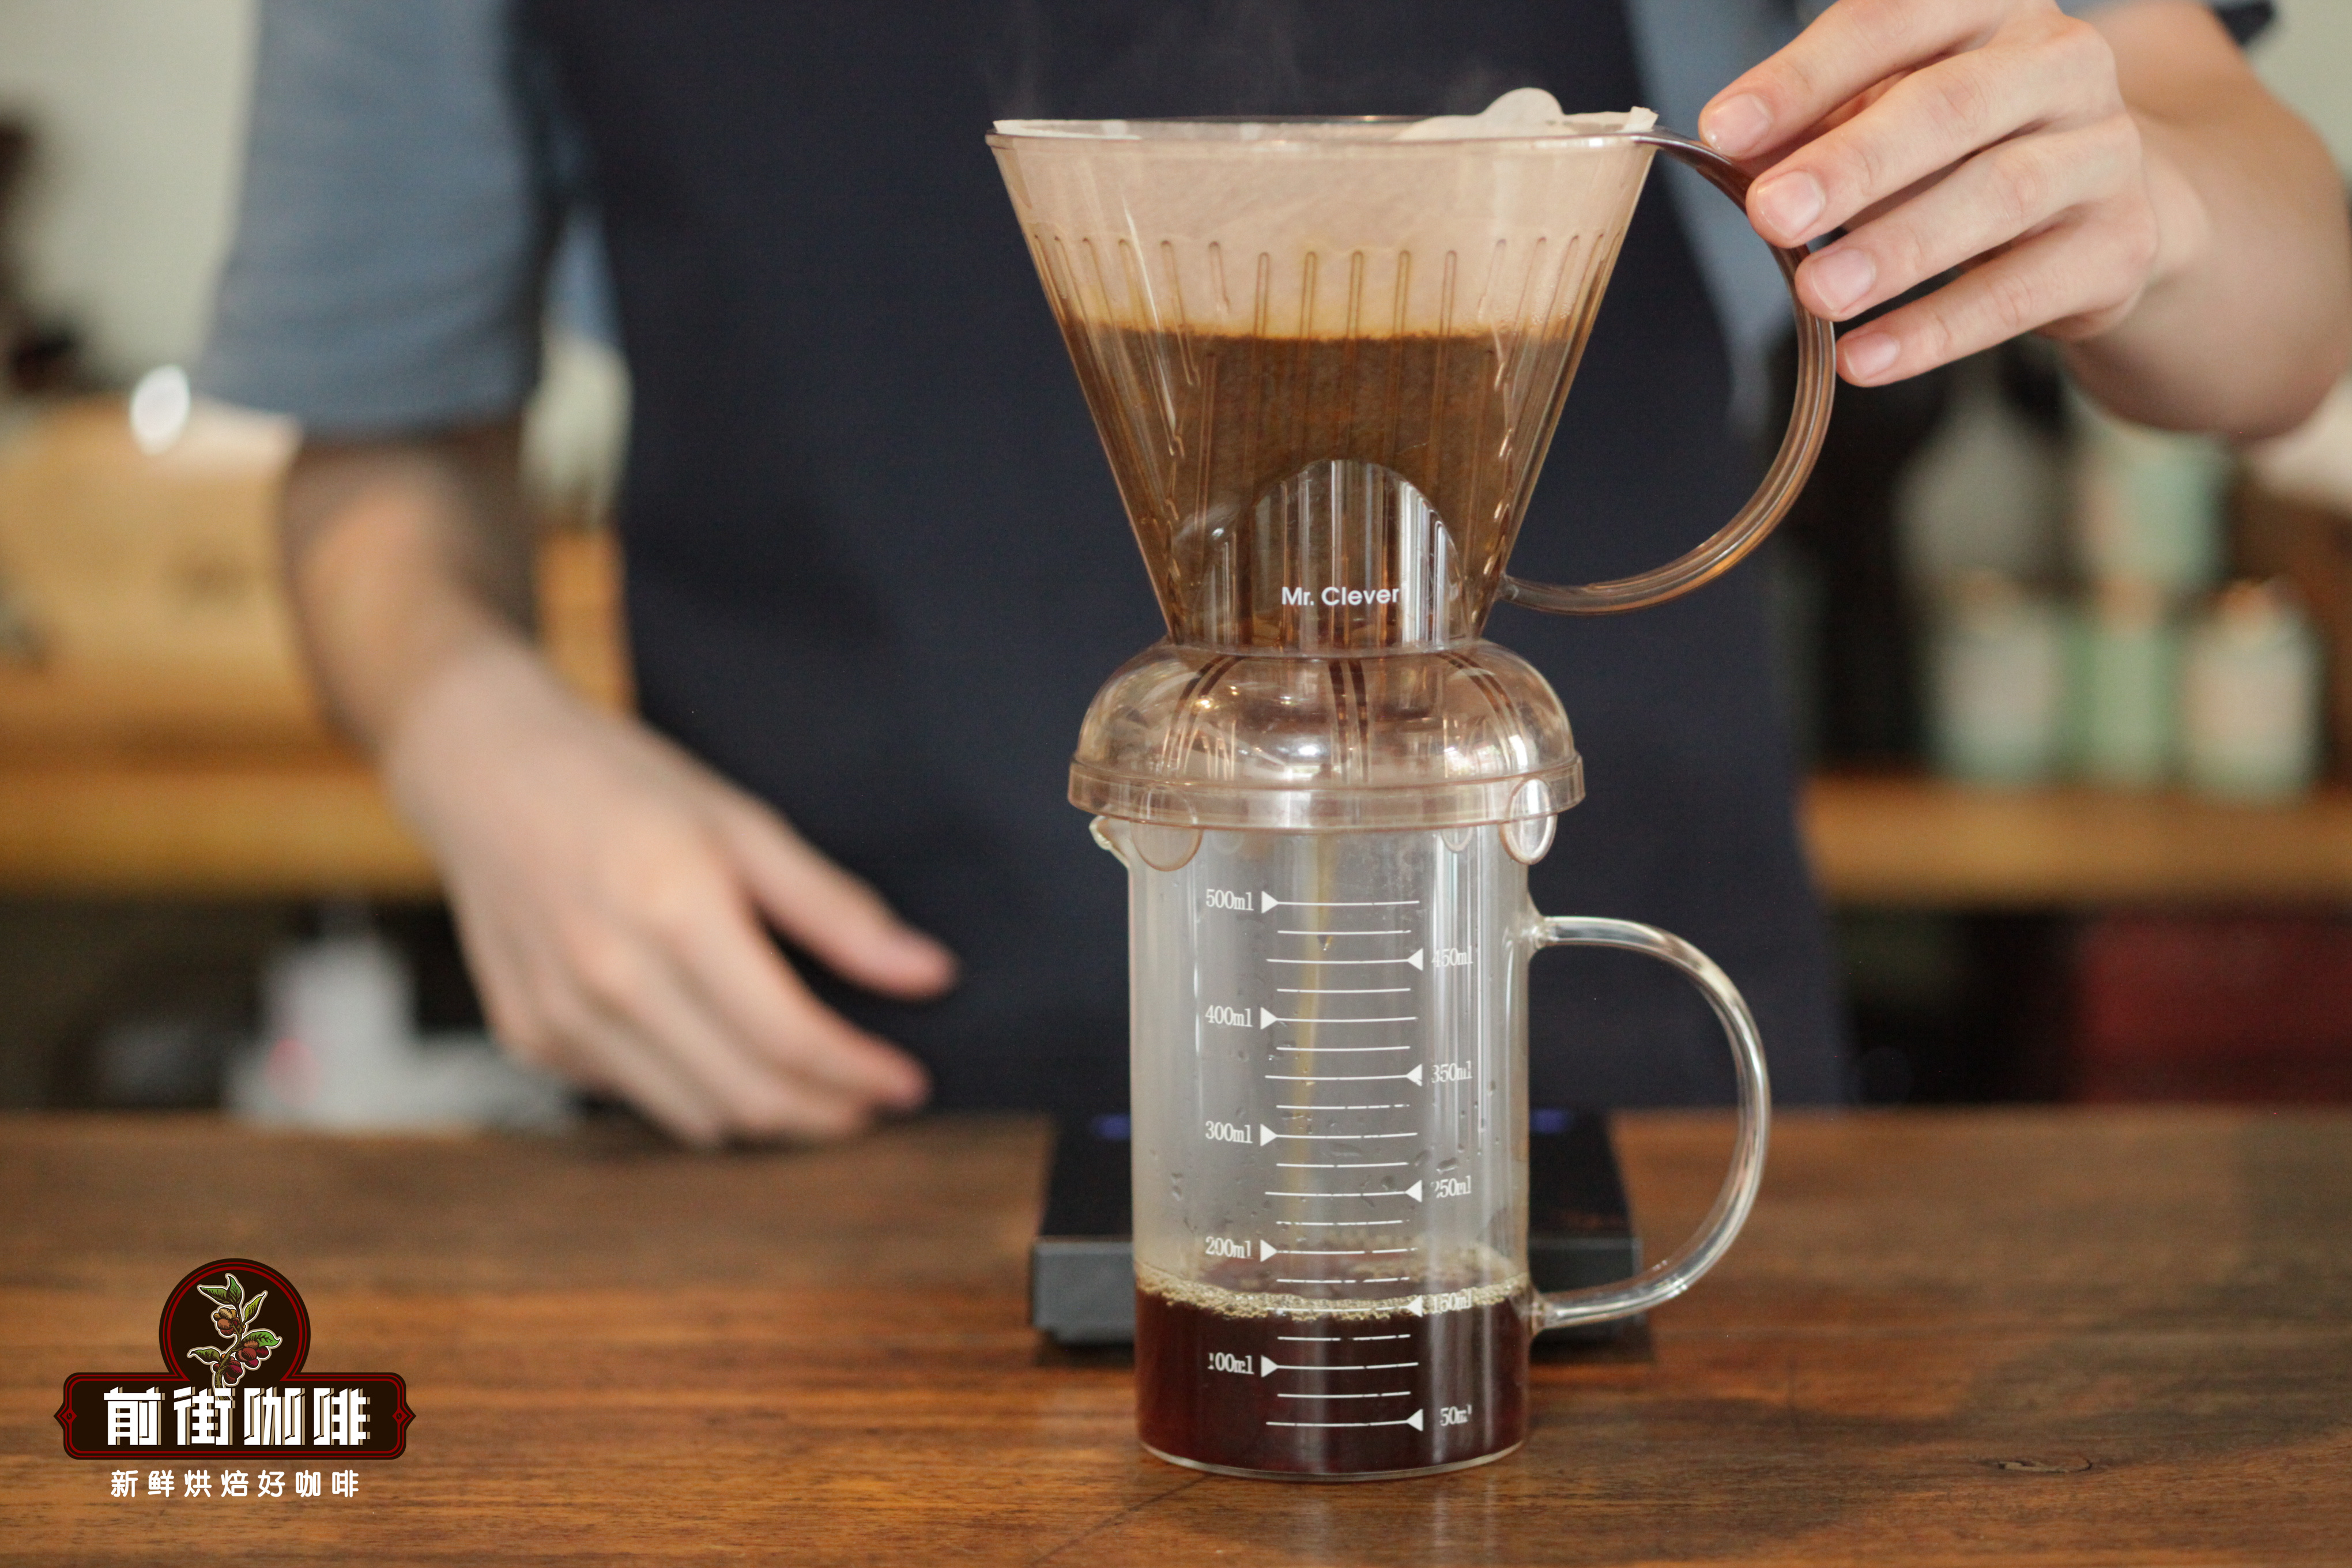 法壓壺的正確研磨尺寸是多少？法壓壺咖啡應該泡多久能煮多少杯咖啡